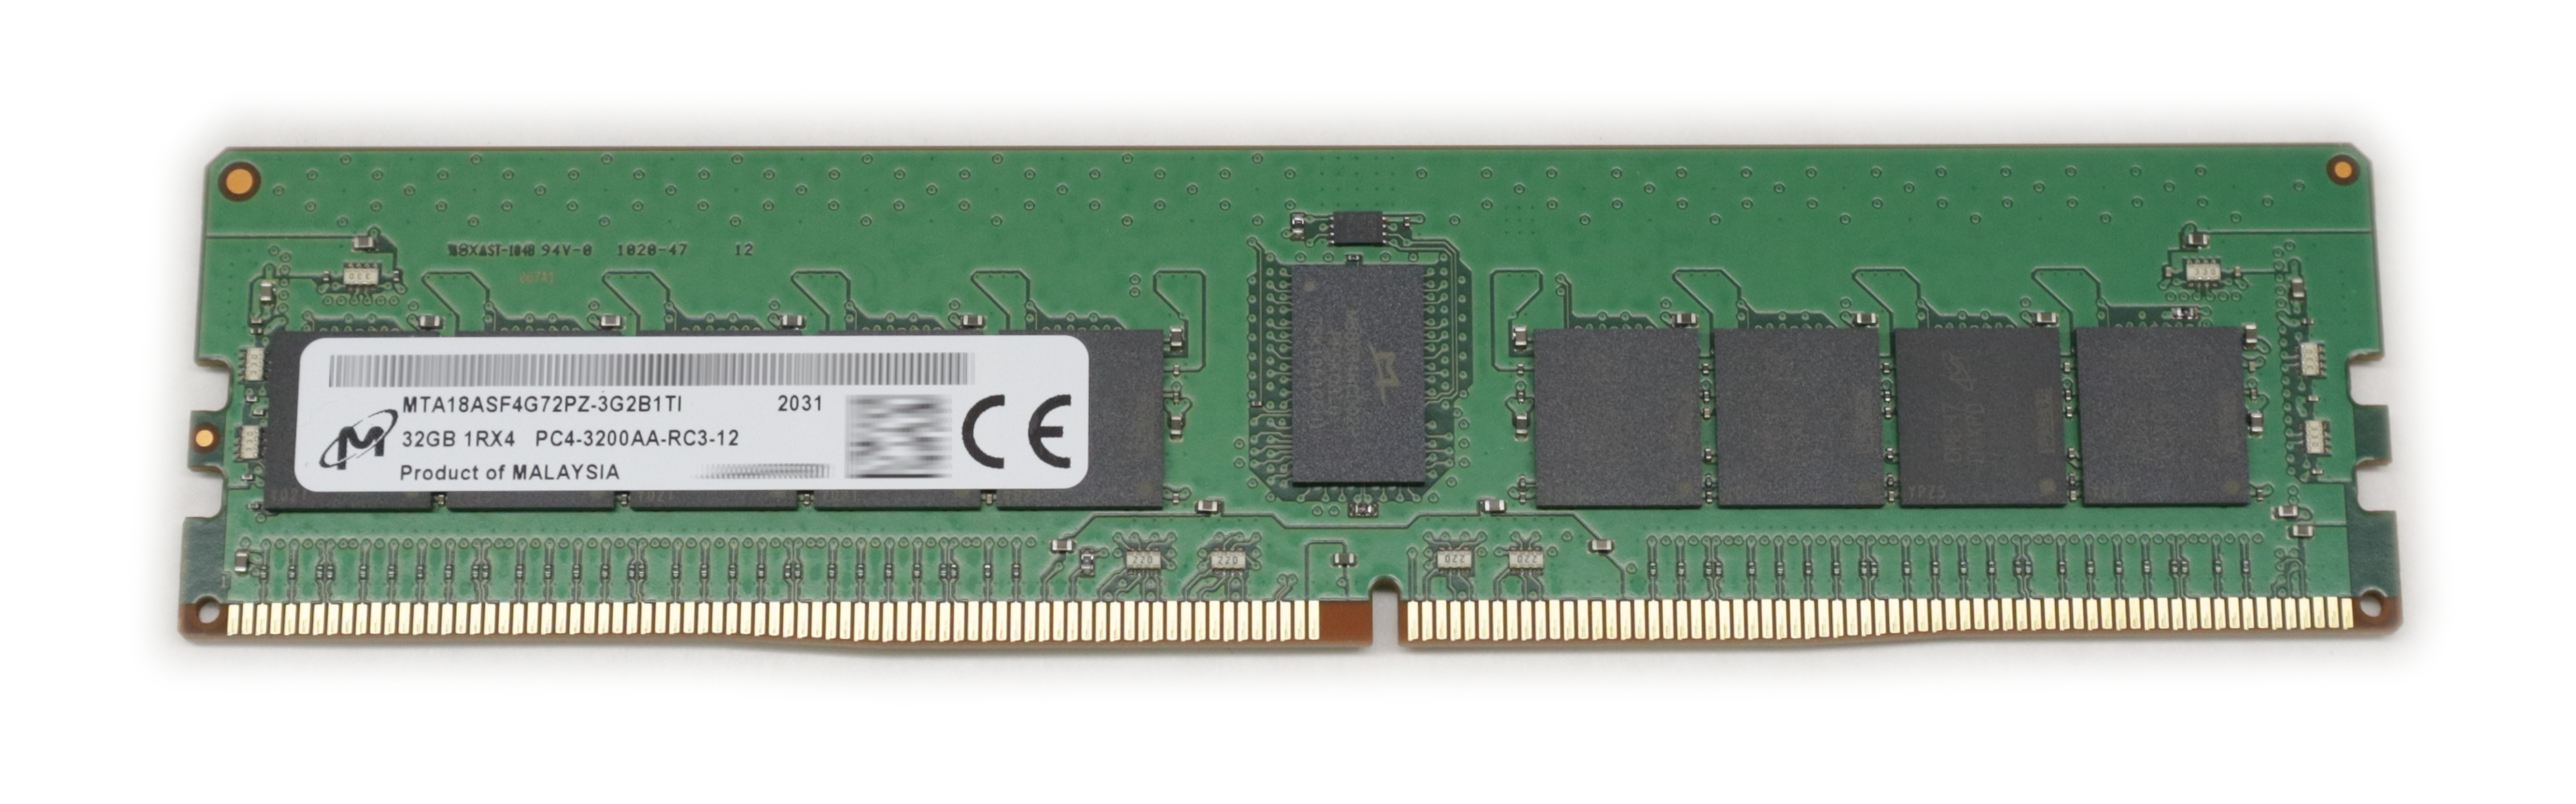 Micron 32GB MTA18ASF4G72PZ-3G2B DDR4 3200Mhz 1.2V RDIMM 288-pin Server